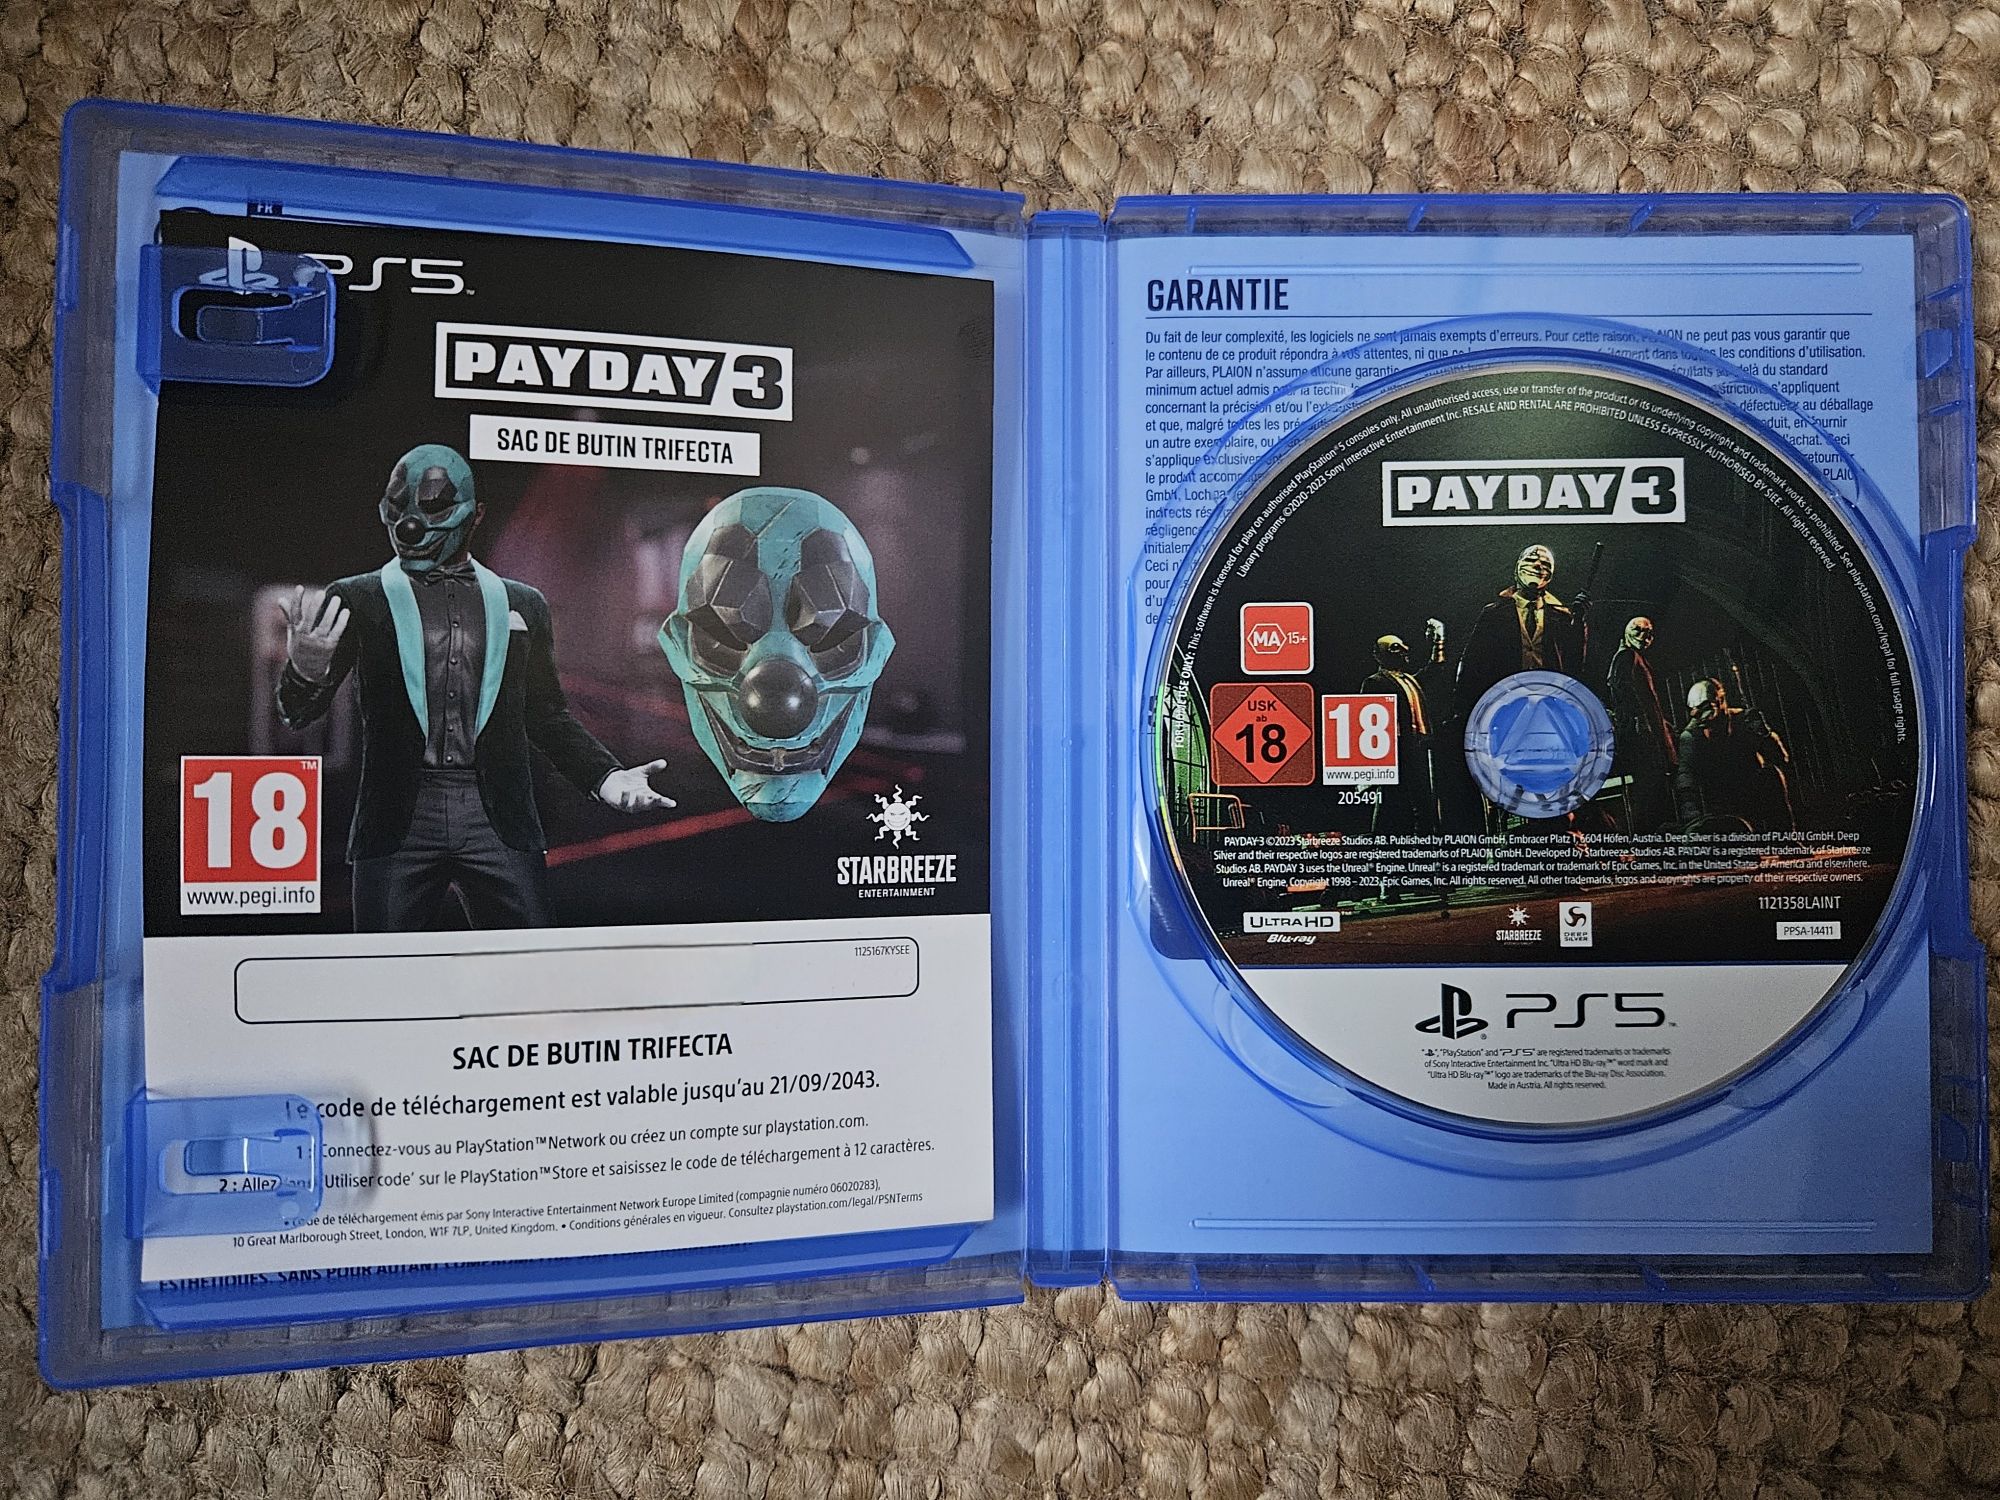 Payday 3 - PS5 como novo